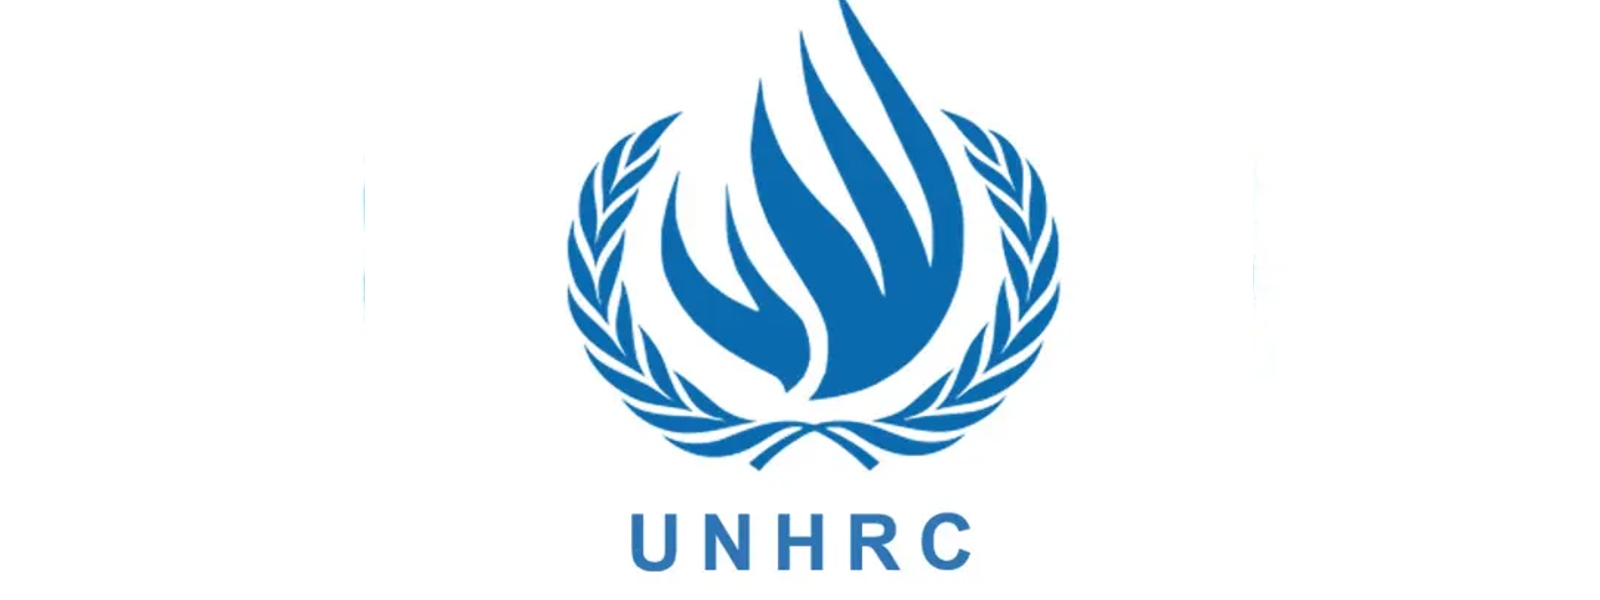 SL meets UN Core Group; 51st UNHRC session today